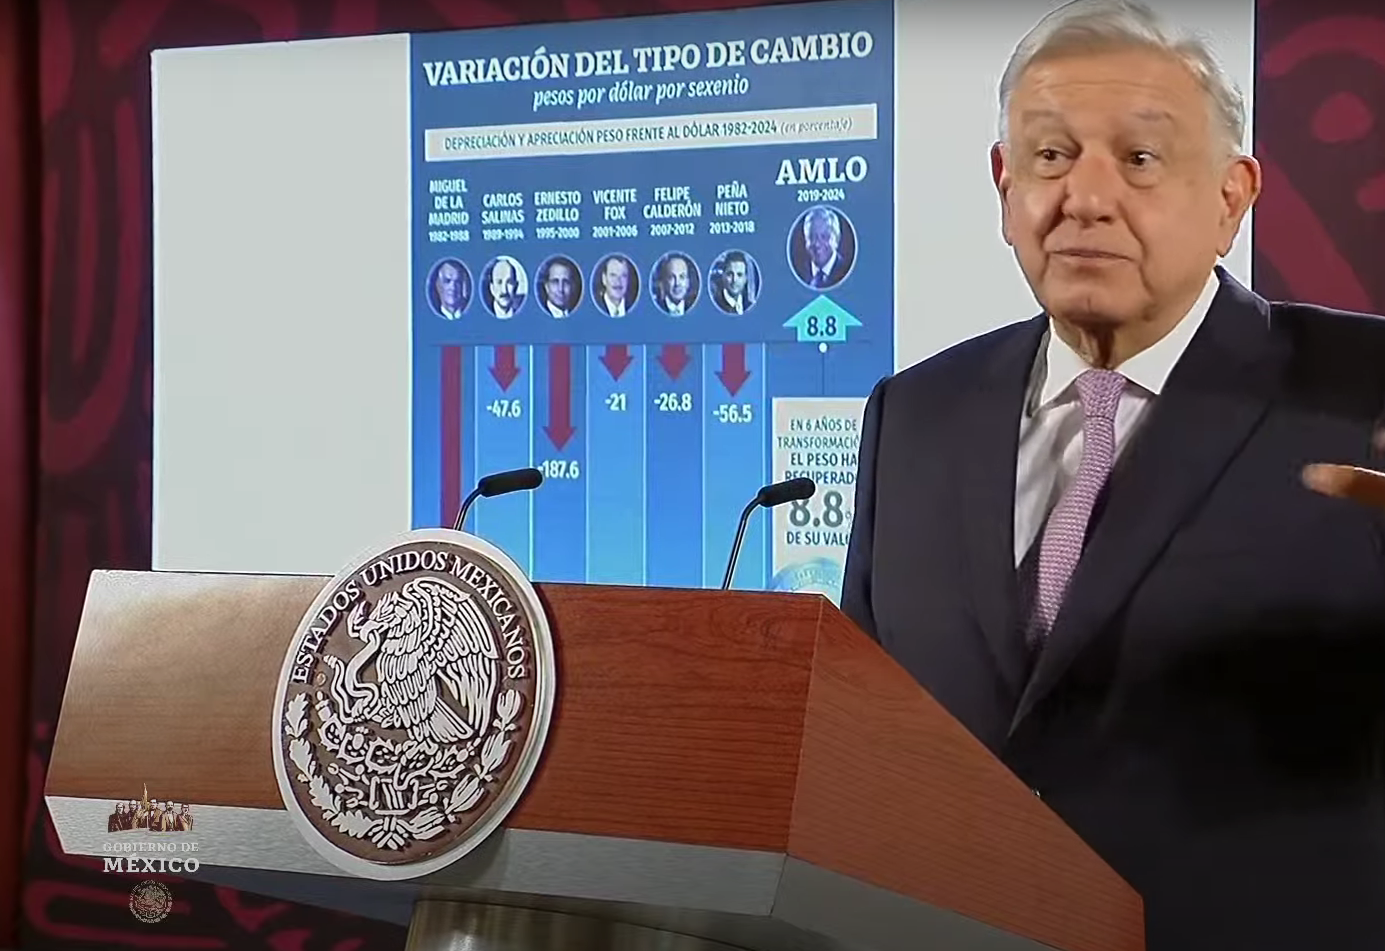 Desde 1970 todos los gobiernos han devaluado el peso, menos el nuestro: López Obrador